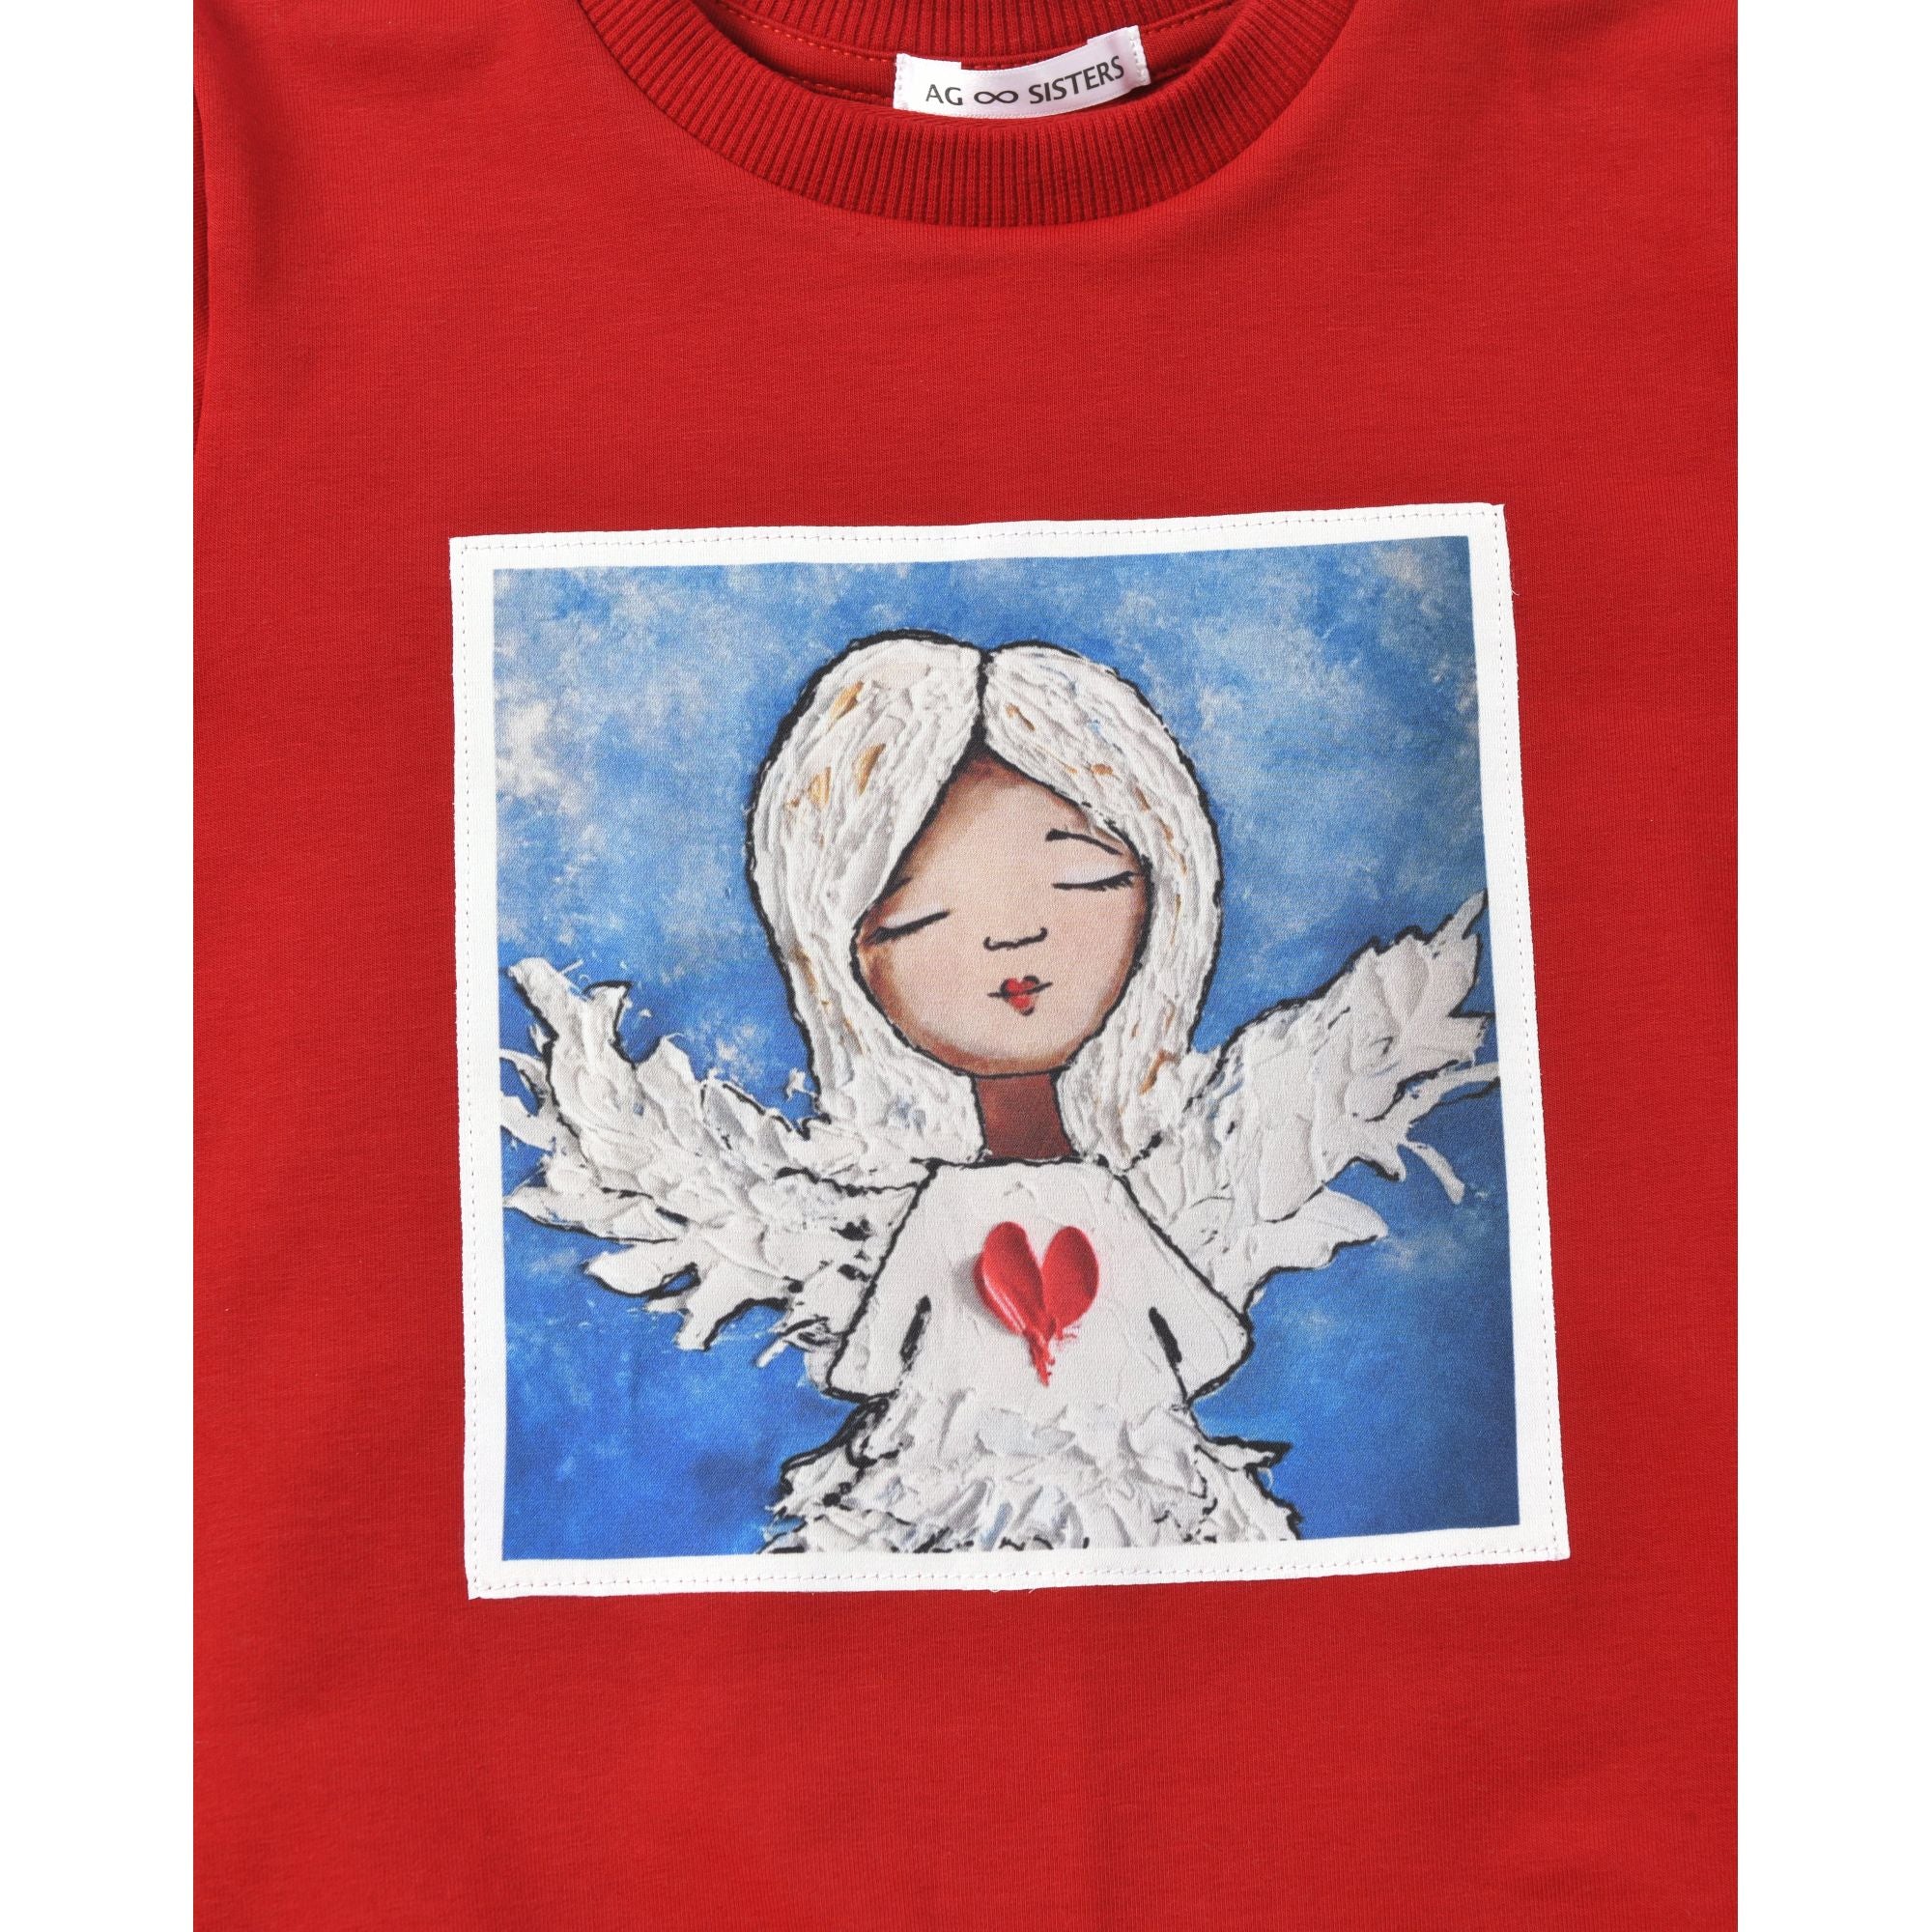 AG Sisters Kids' Sweatshirt with Silk Print "Angel" (red)